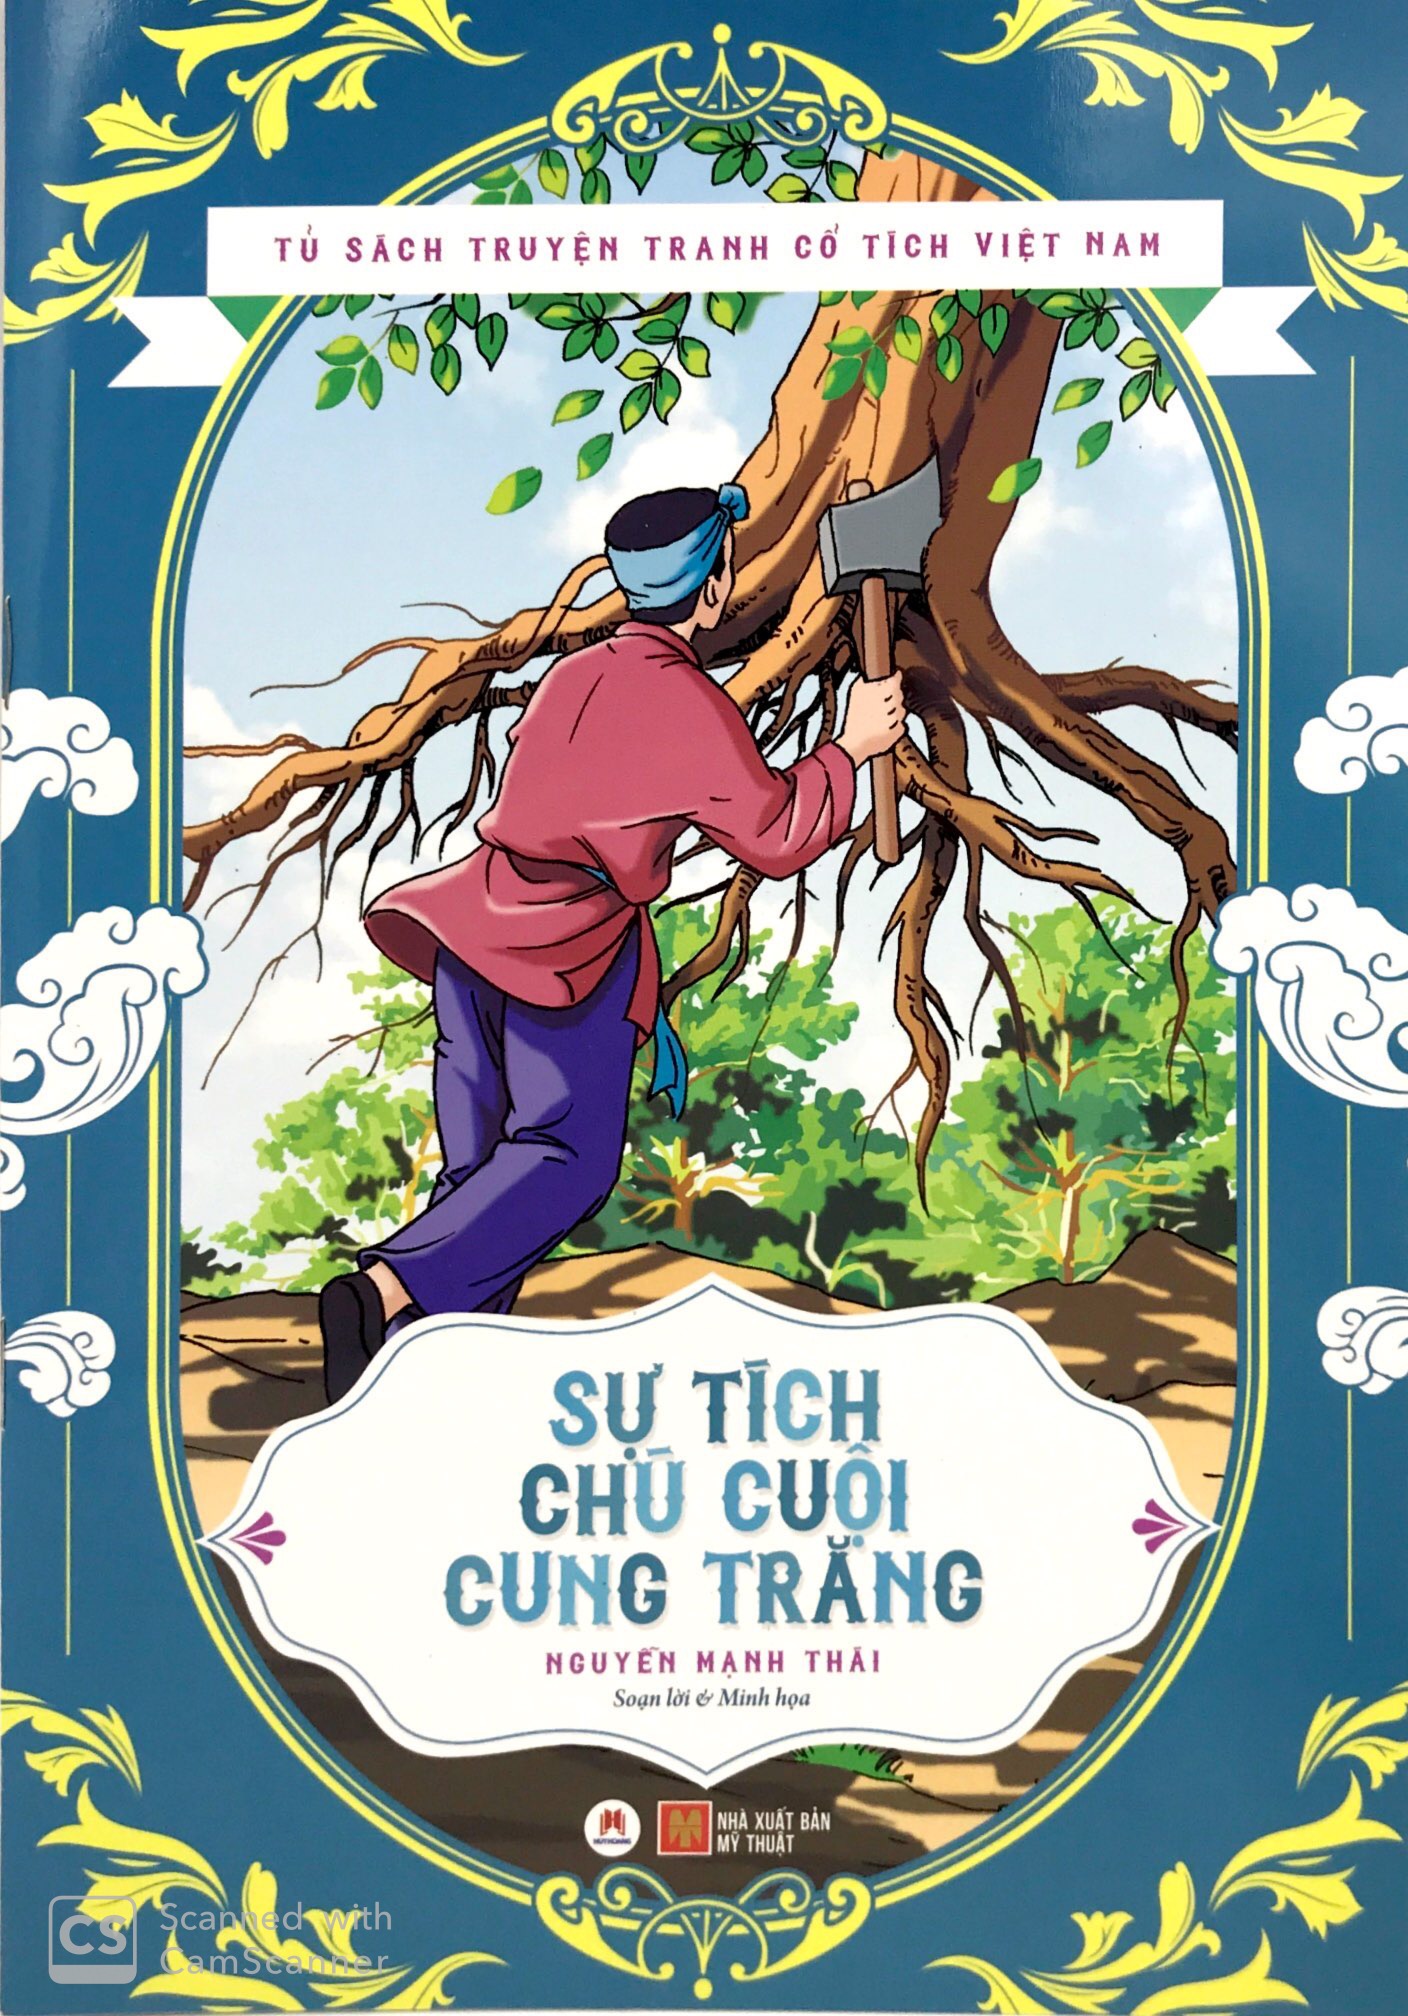 Truyện Tranh Cổ Tích Việt Nam: Khám phá thế giới phong phú của truyện tranh cổ tích Việt Nam với những hình ảnh tuyệt đẹp và câu chuyện phiêu lưu hấp dẫn! Dân gian và văn hóa Việt Nam sẽ được tái hiện trong các trang truyện tranh, giúp bạn hiểu thêm về quê hương và những giá trị truyền thống.